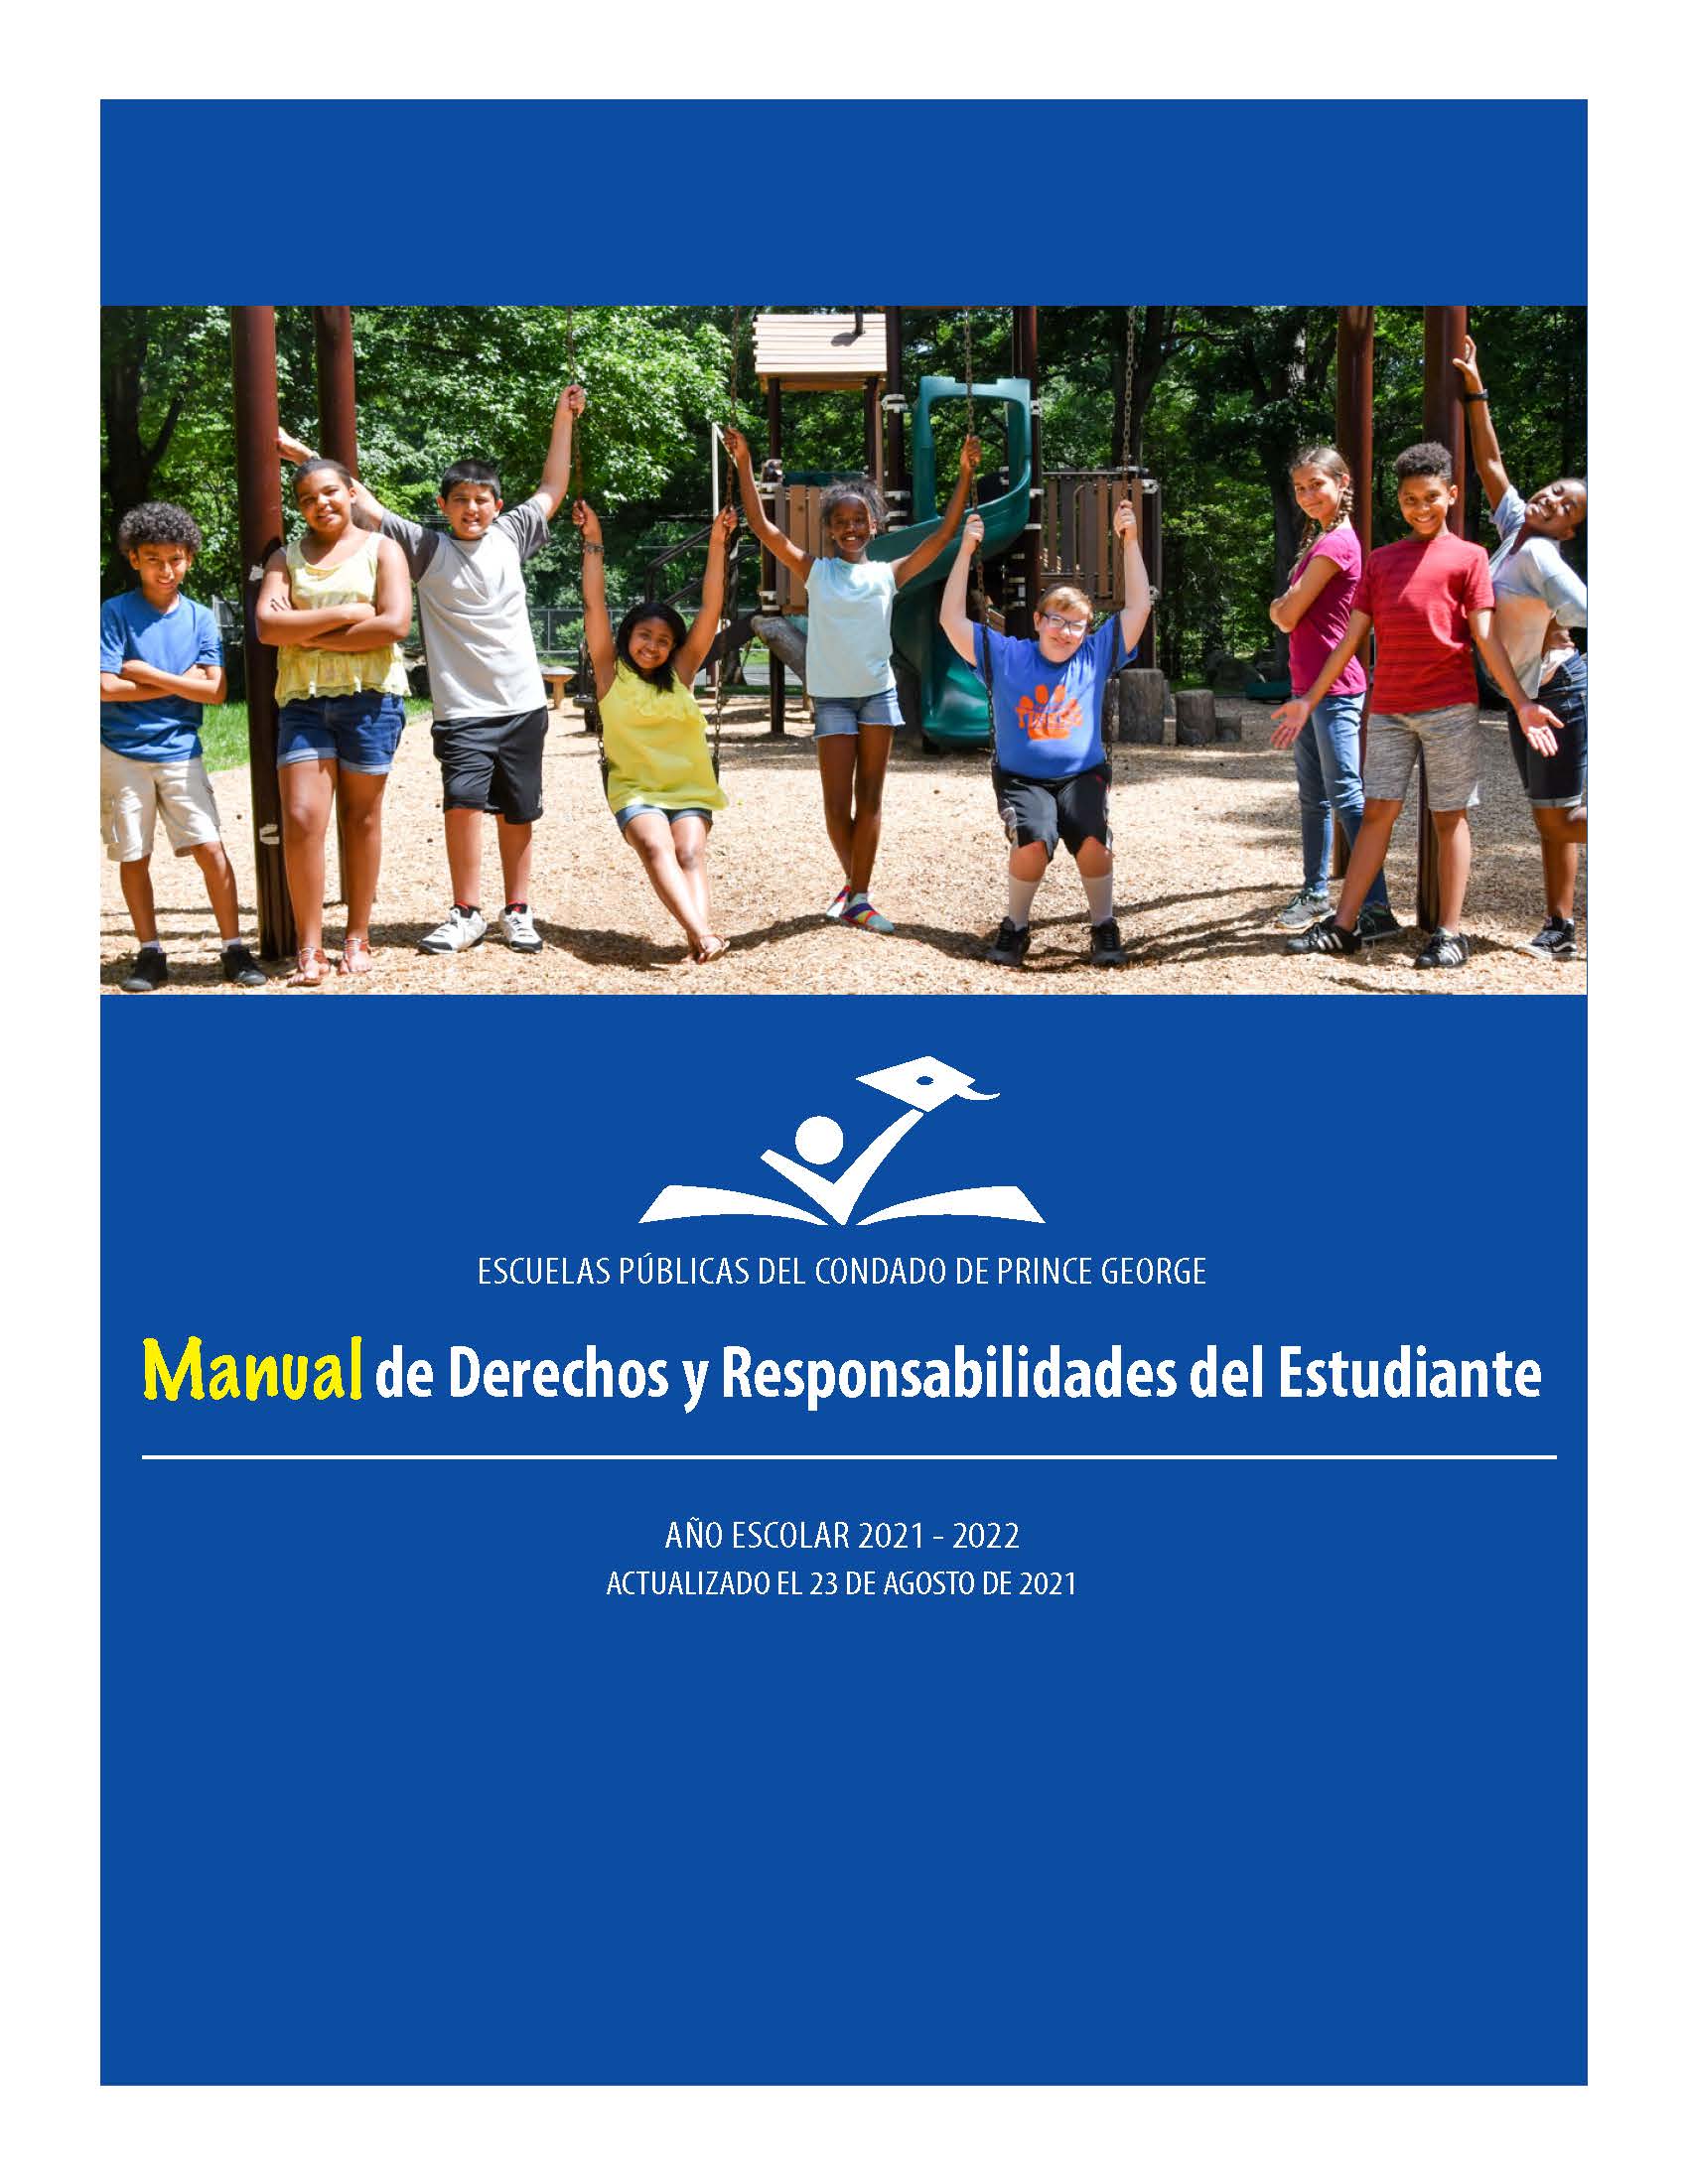 Cover of Manual de Derechos y Responsabilidades del Estudiante_Page_01.jpg